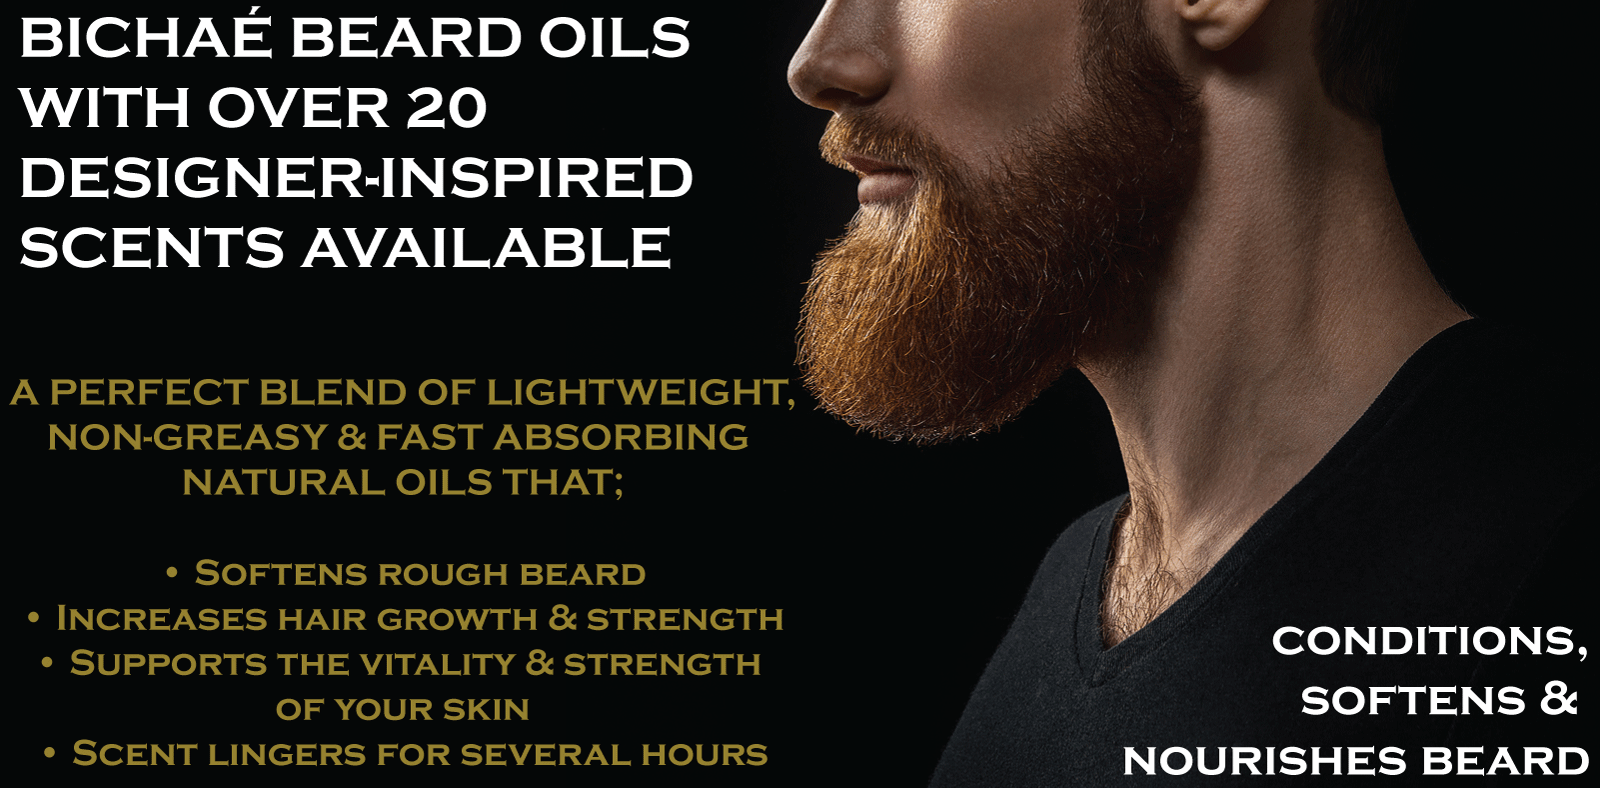 Bichae designer-inspired beard oils